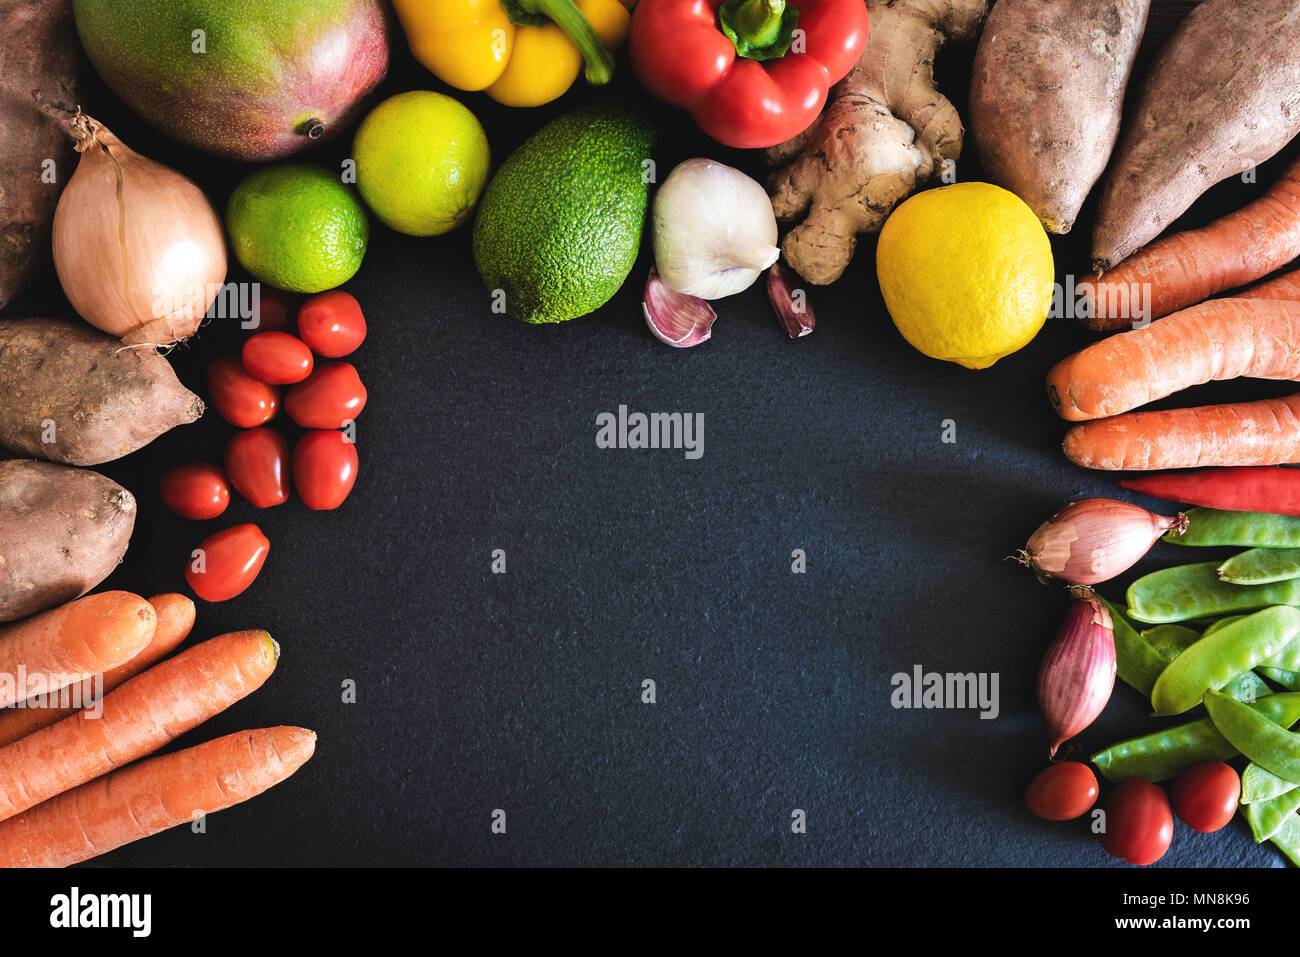 Directamente encima de acercamiento de verduras y frutas frescas orgánicas sobre pizarra cocina Foto de stock